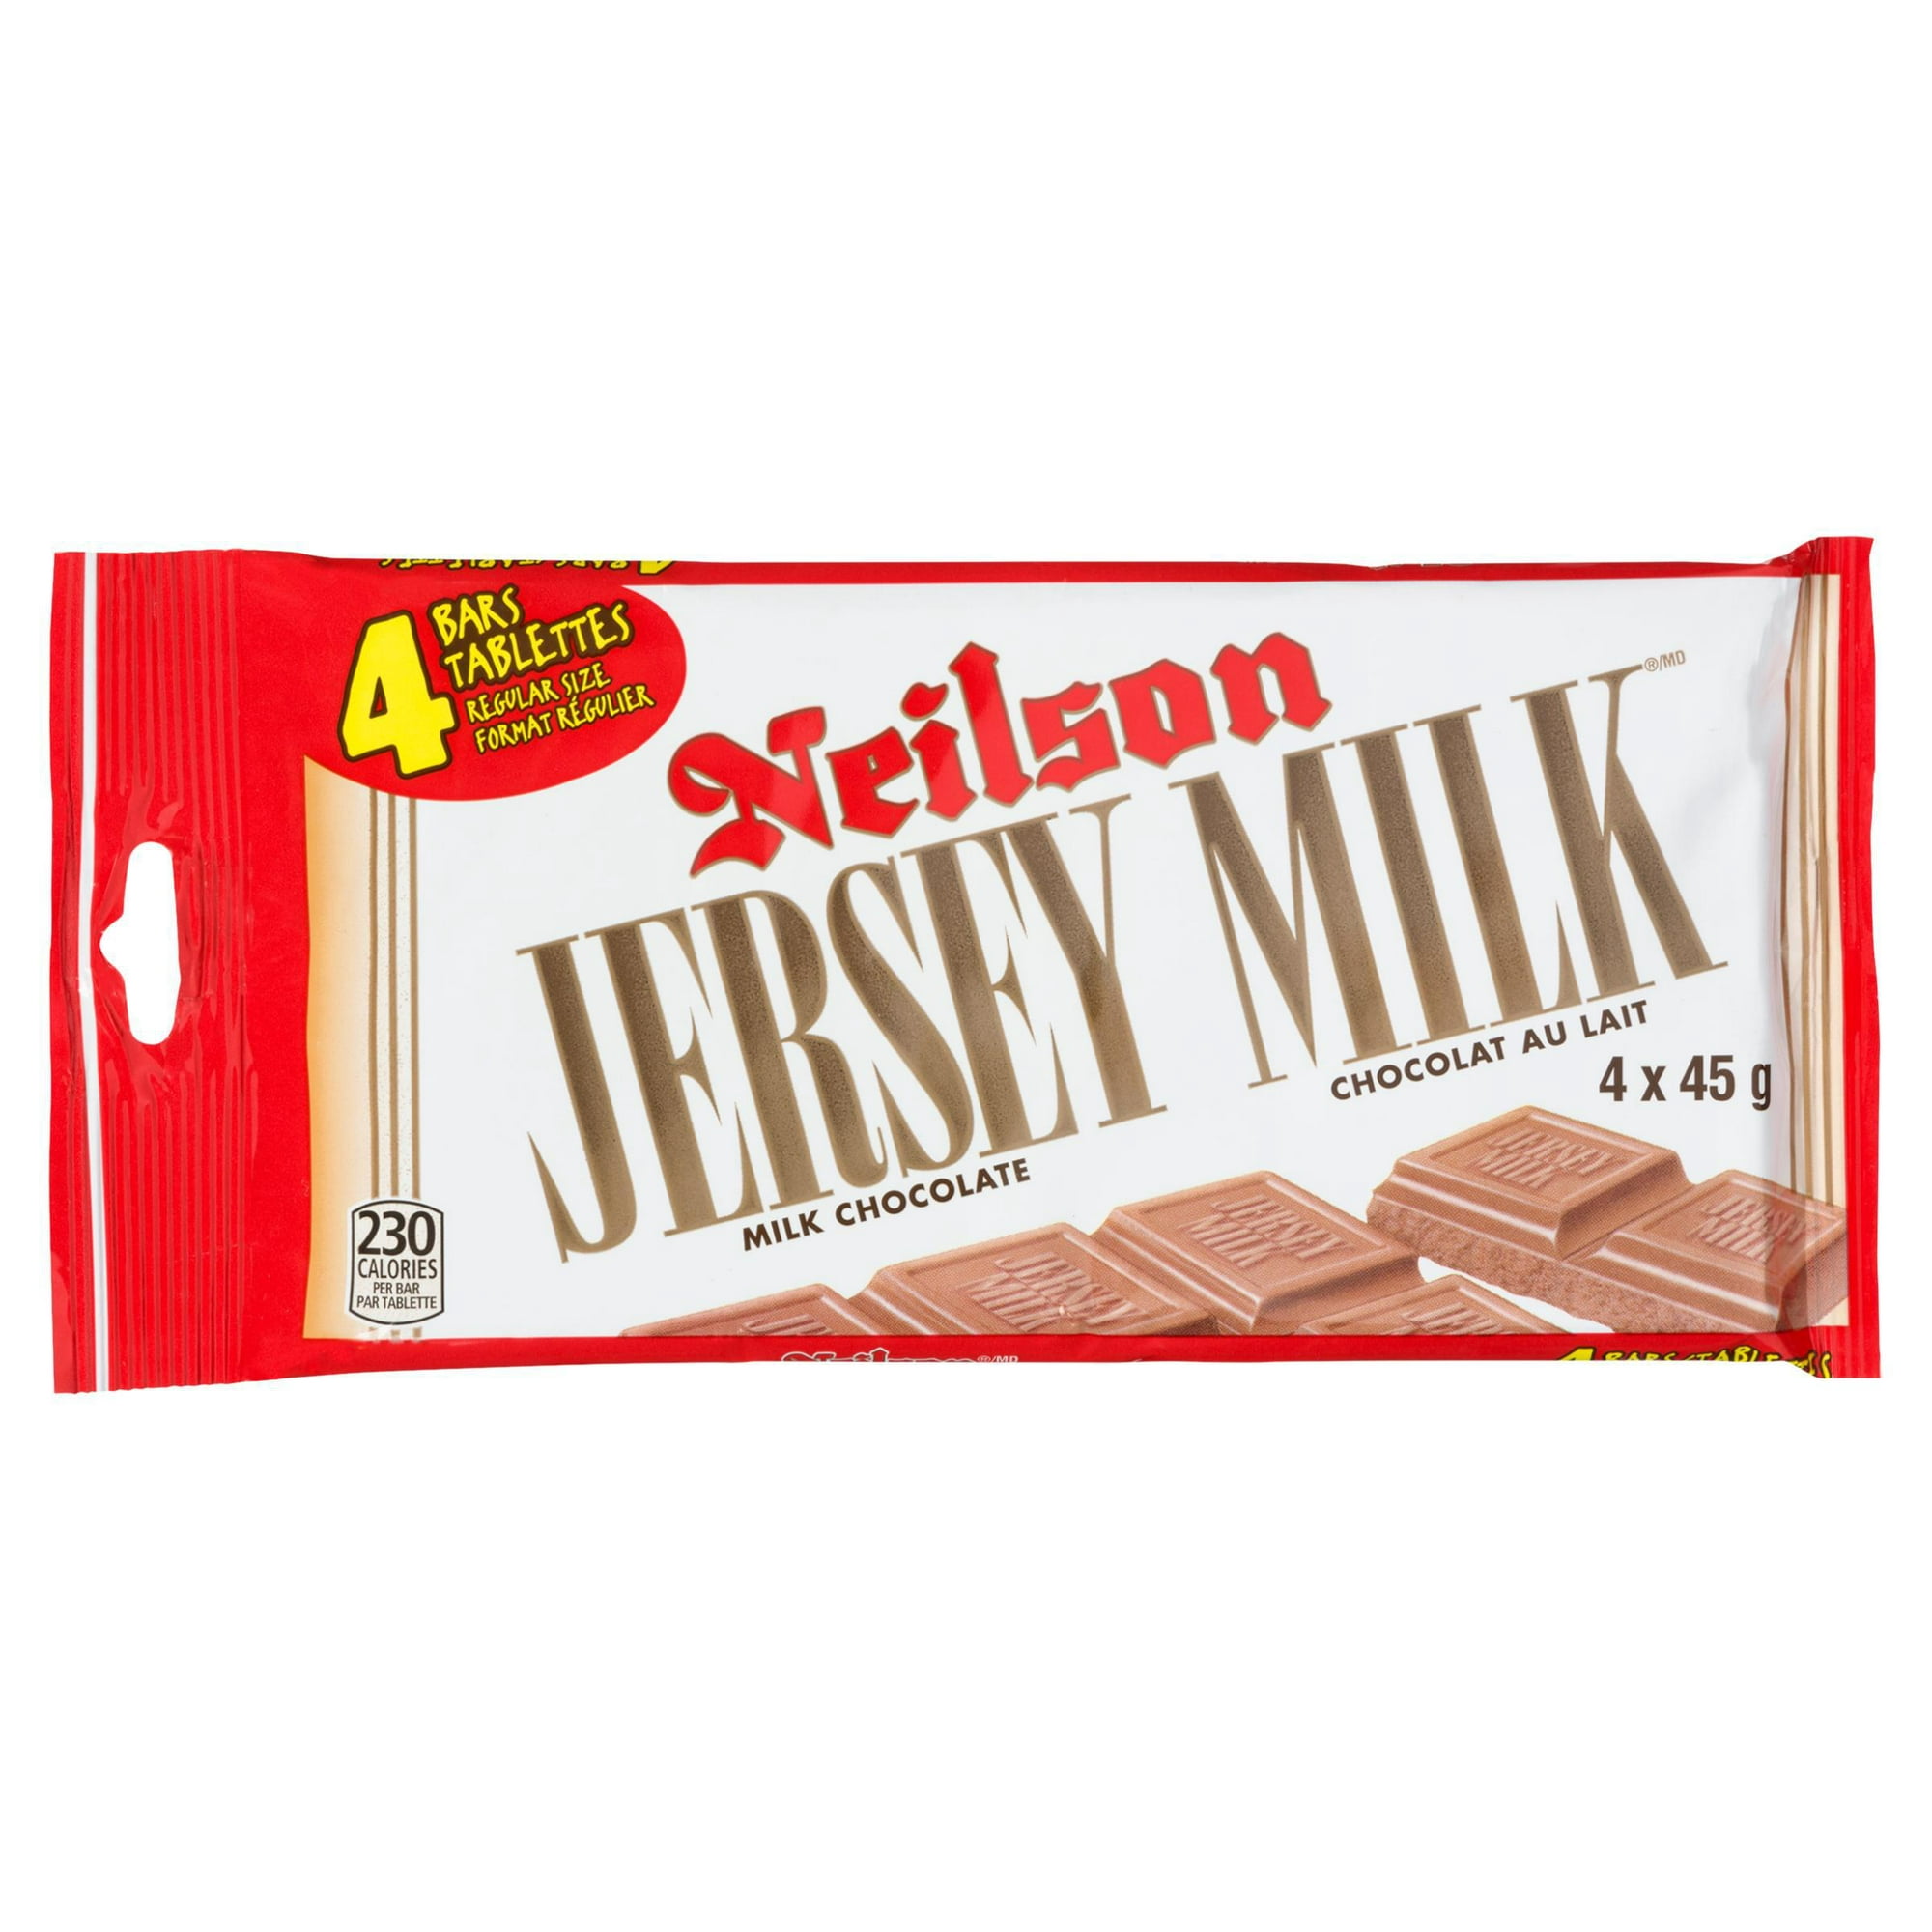 Onvoorziene omstandigheden Of anders Pakistaans Nielson Jersey Milk, Milk Chocolate, 4 count, 180 g | Walmart Canada